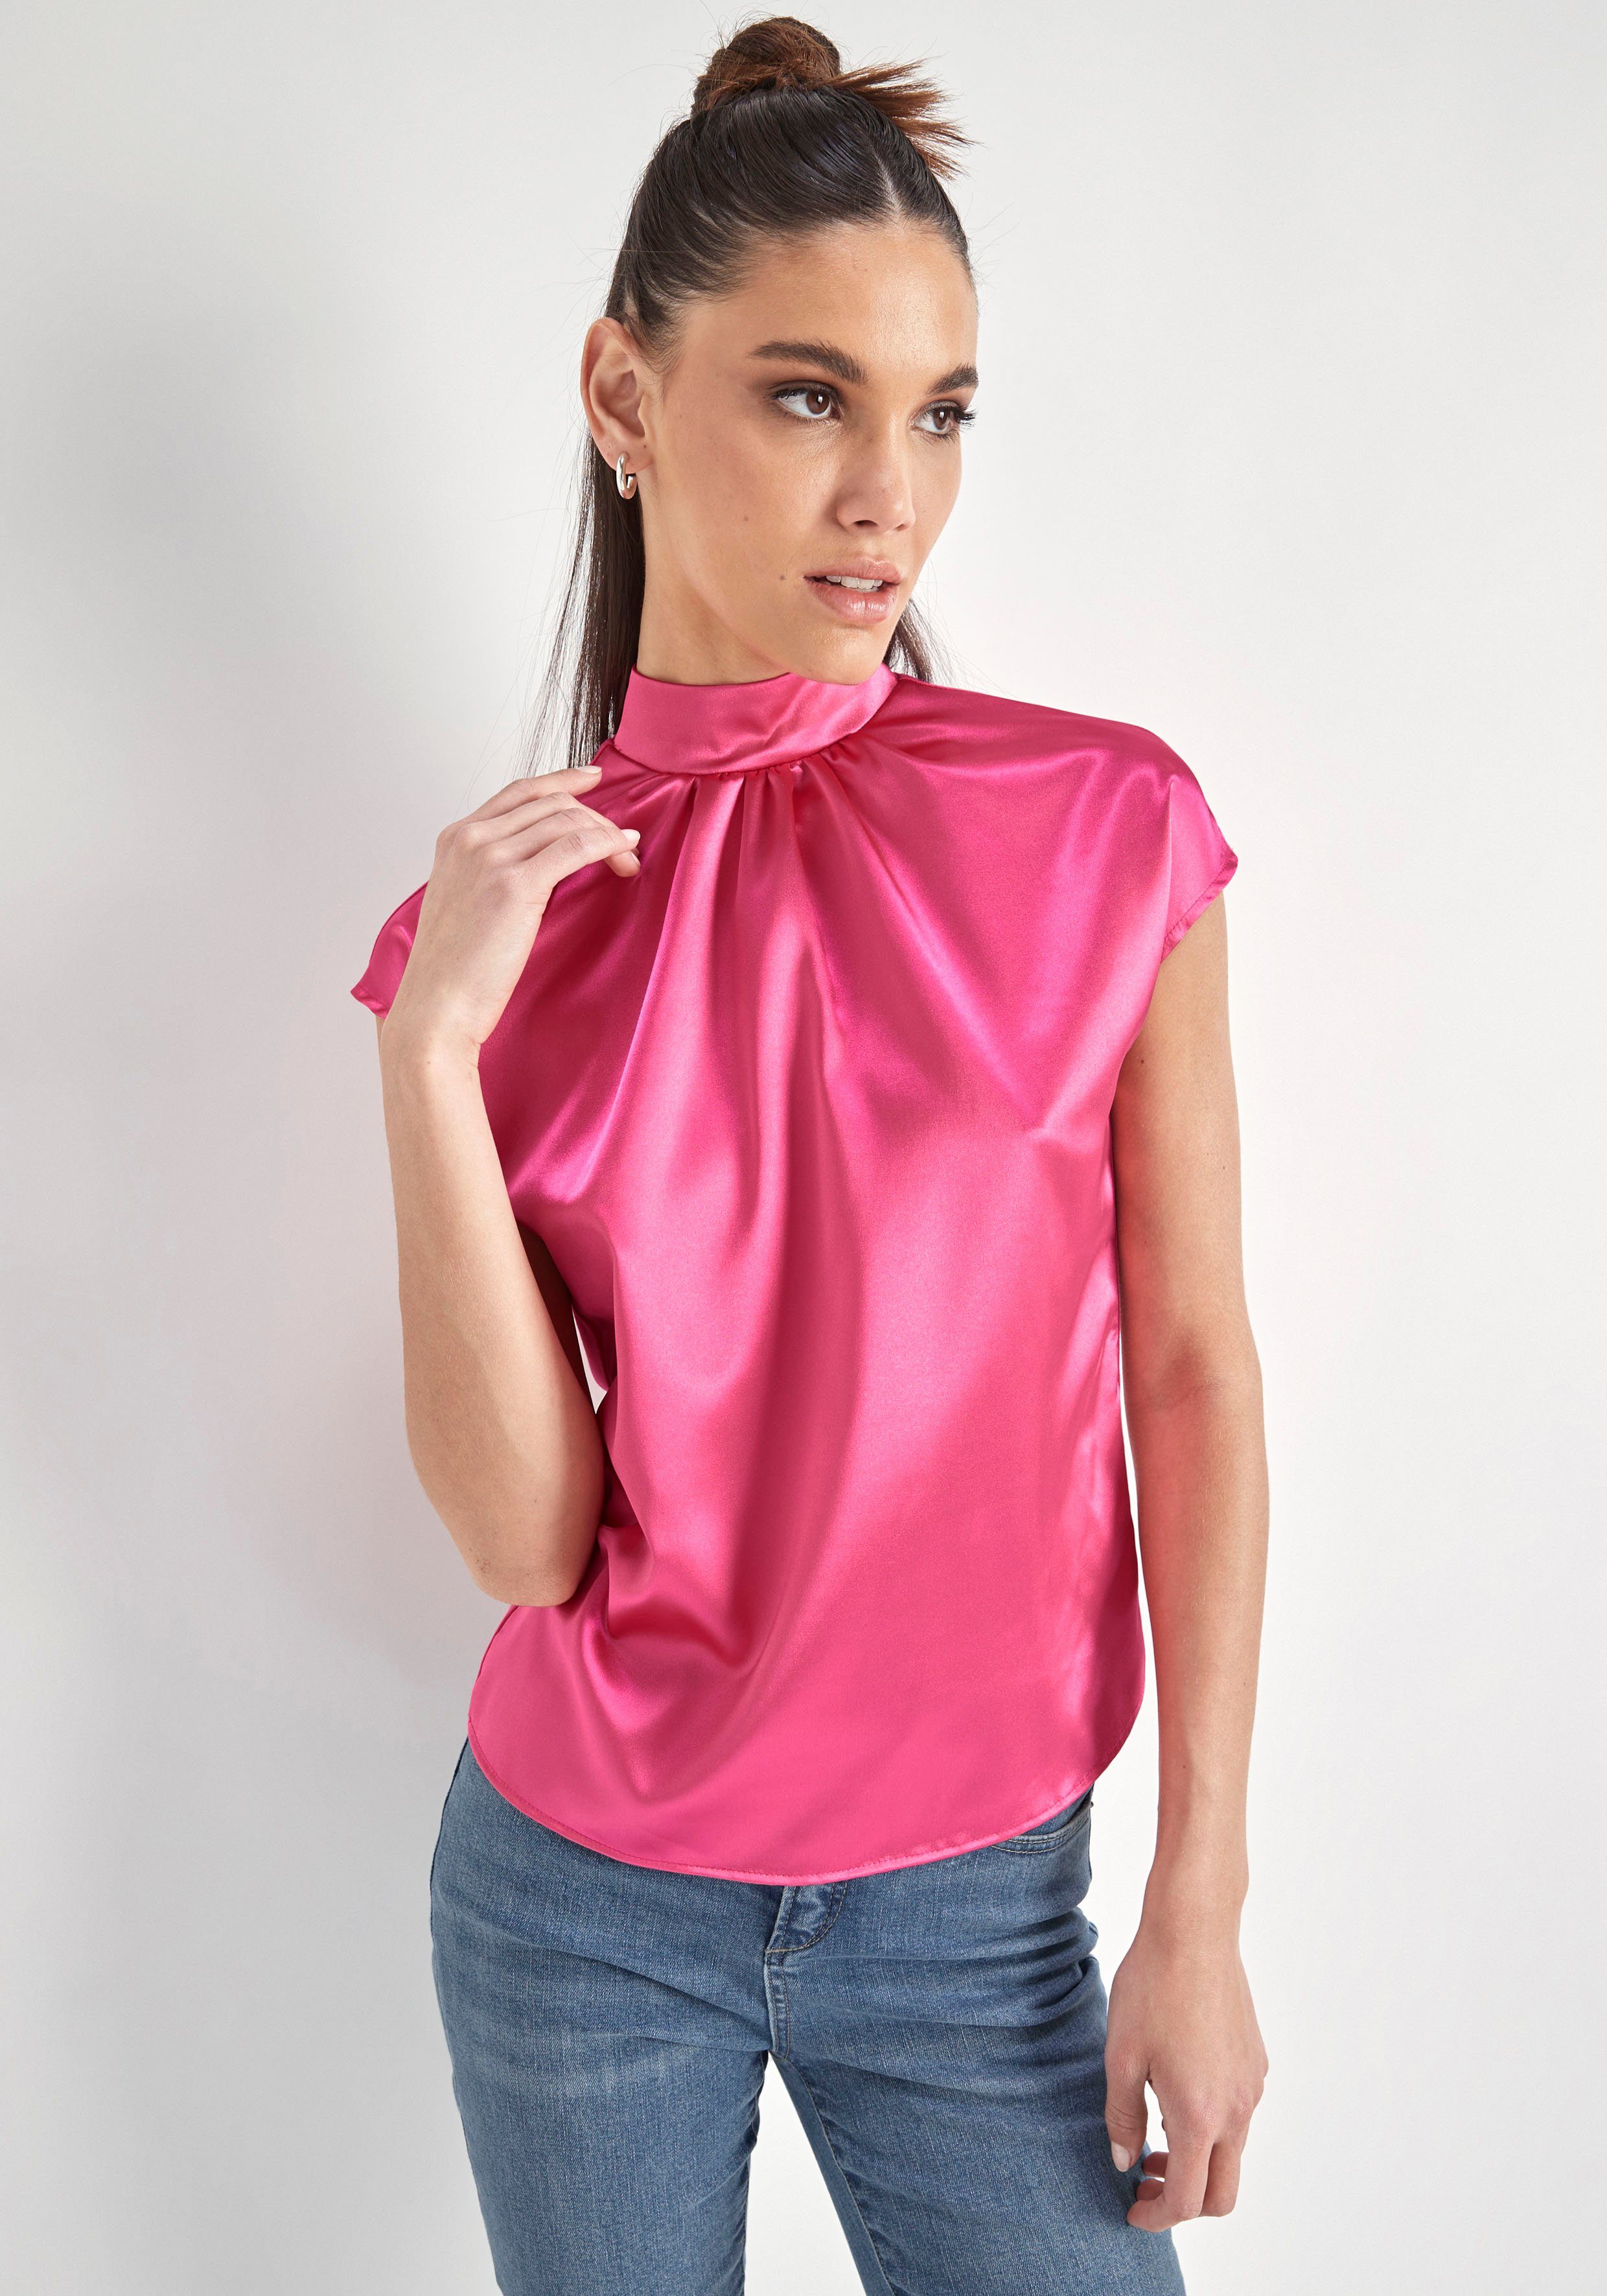 HECHTER PARIS Blusentop hochwertigem pink Material aus